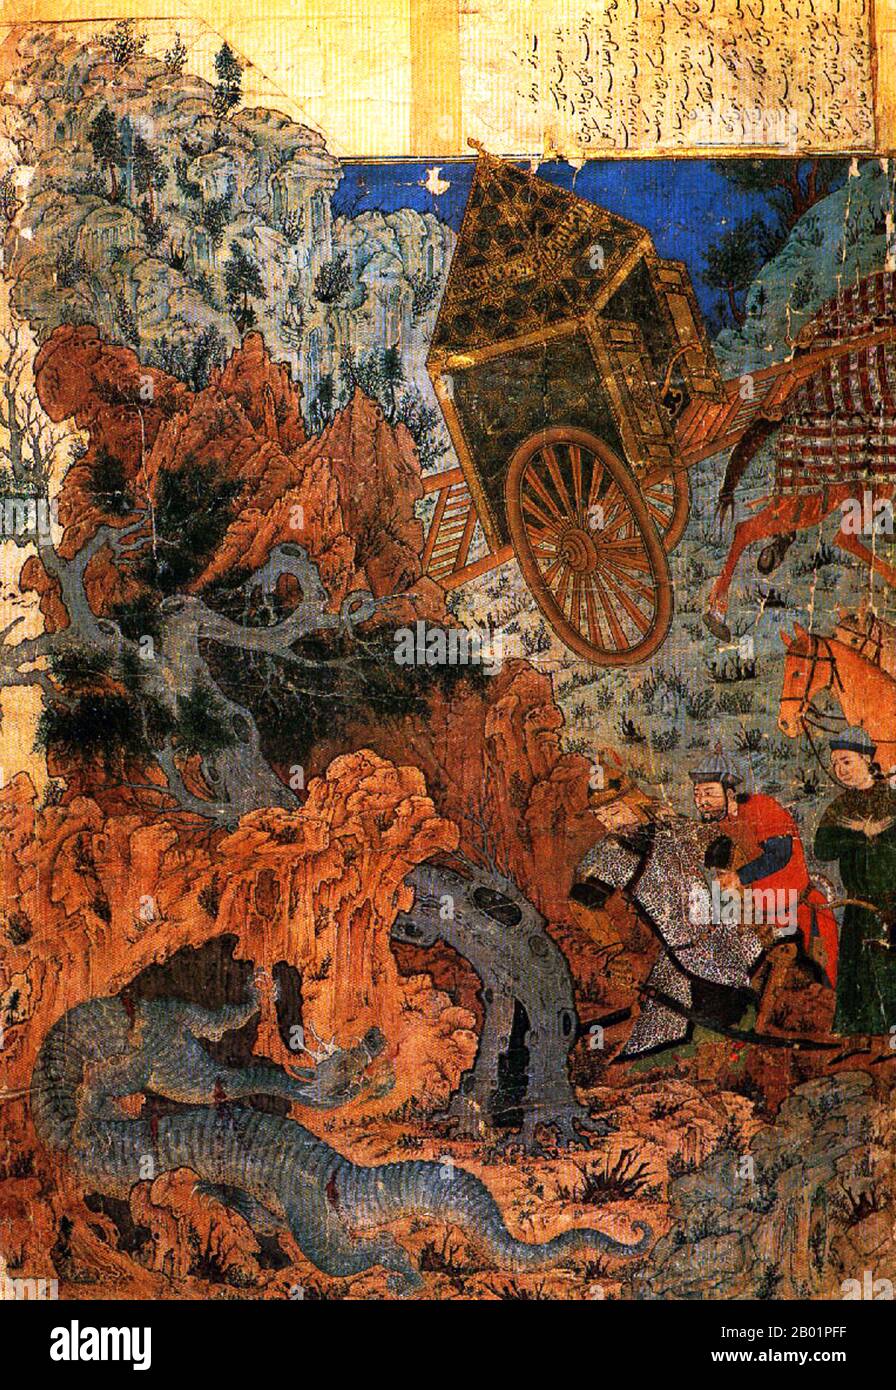 Iran/Perse : Isfandiyar se bat avec un dragon. Peinture miniature des albums Sarai, Tabriz, seconde moitié du 14e siècle. Le Shahnameh ou Shah-nama est un énorme opus poétique écrit par le poète persan Ferdowsi vers 1000 EC et est l'épopée nationale de la sphère culturelle de la Grande Perse. Composé de quelque 60 000 versets, le Shahnameh raconte le passé mythique et historique du (Grand) Iran depuis la création du monde jusqu’à la conquête islamique de la Perse au 7e siècle. L'œuvre est d'une importance centrale dans la culture persane, considérée comme un chef-d'œuvre littéraire. Banque D'Images